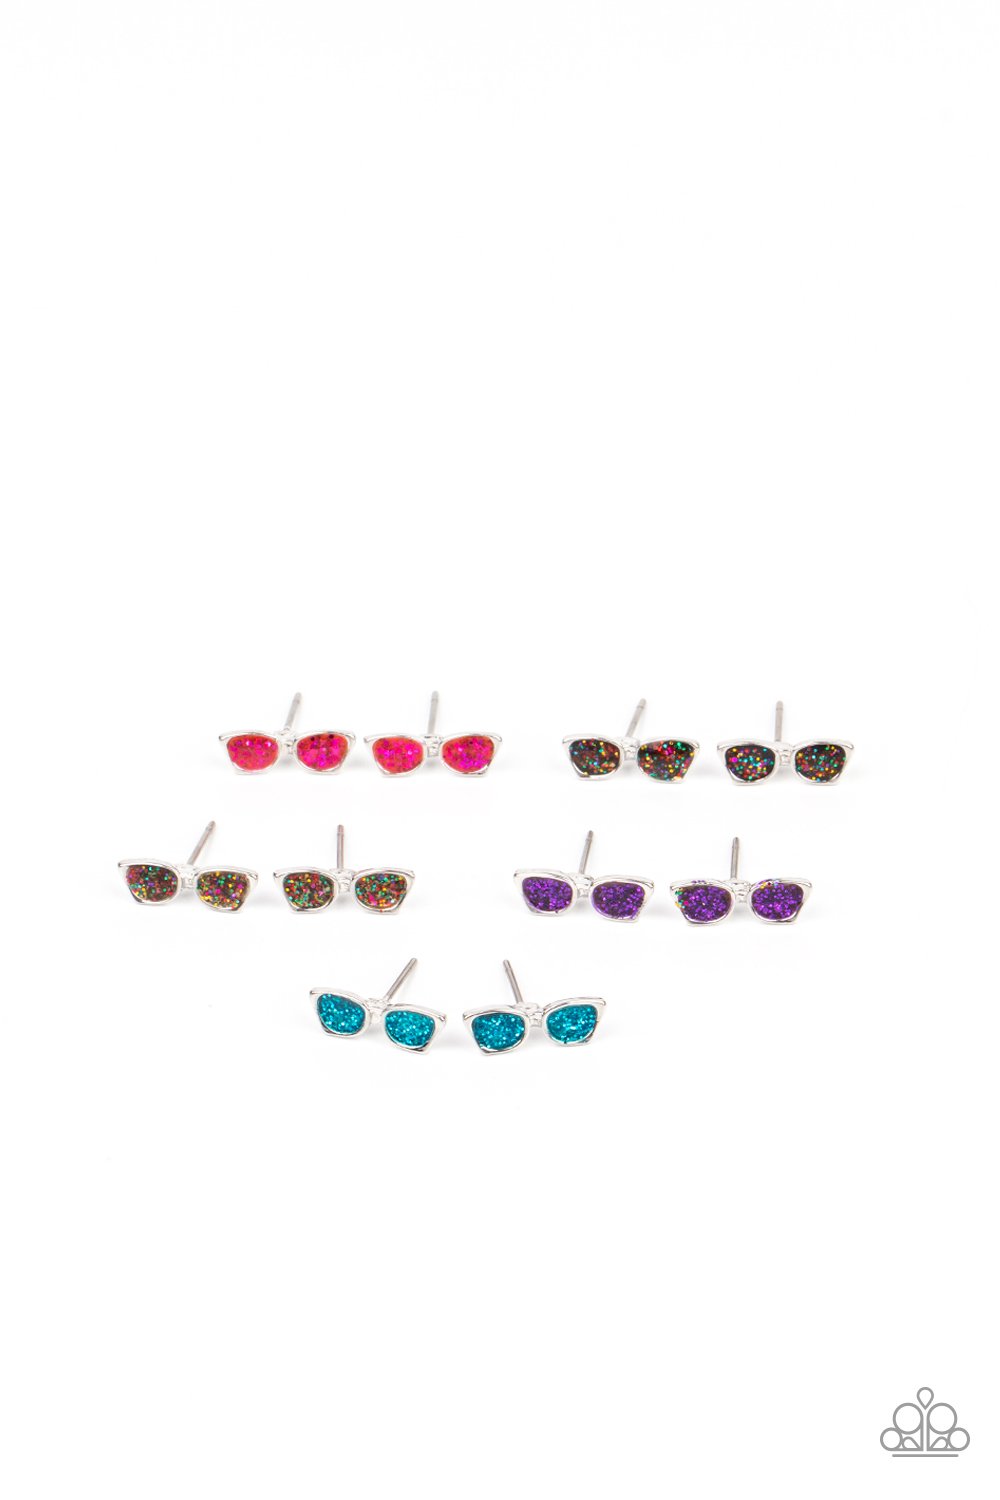 Starlet Shimmer Sunglasses Earring Pack♥ Starlet Shimmer Earrings♥ Paparazzi ♥